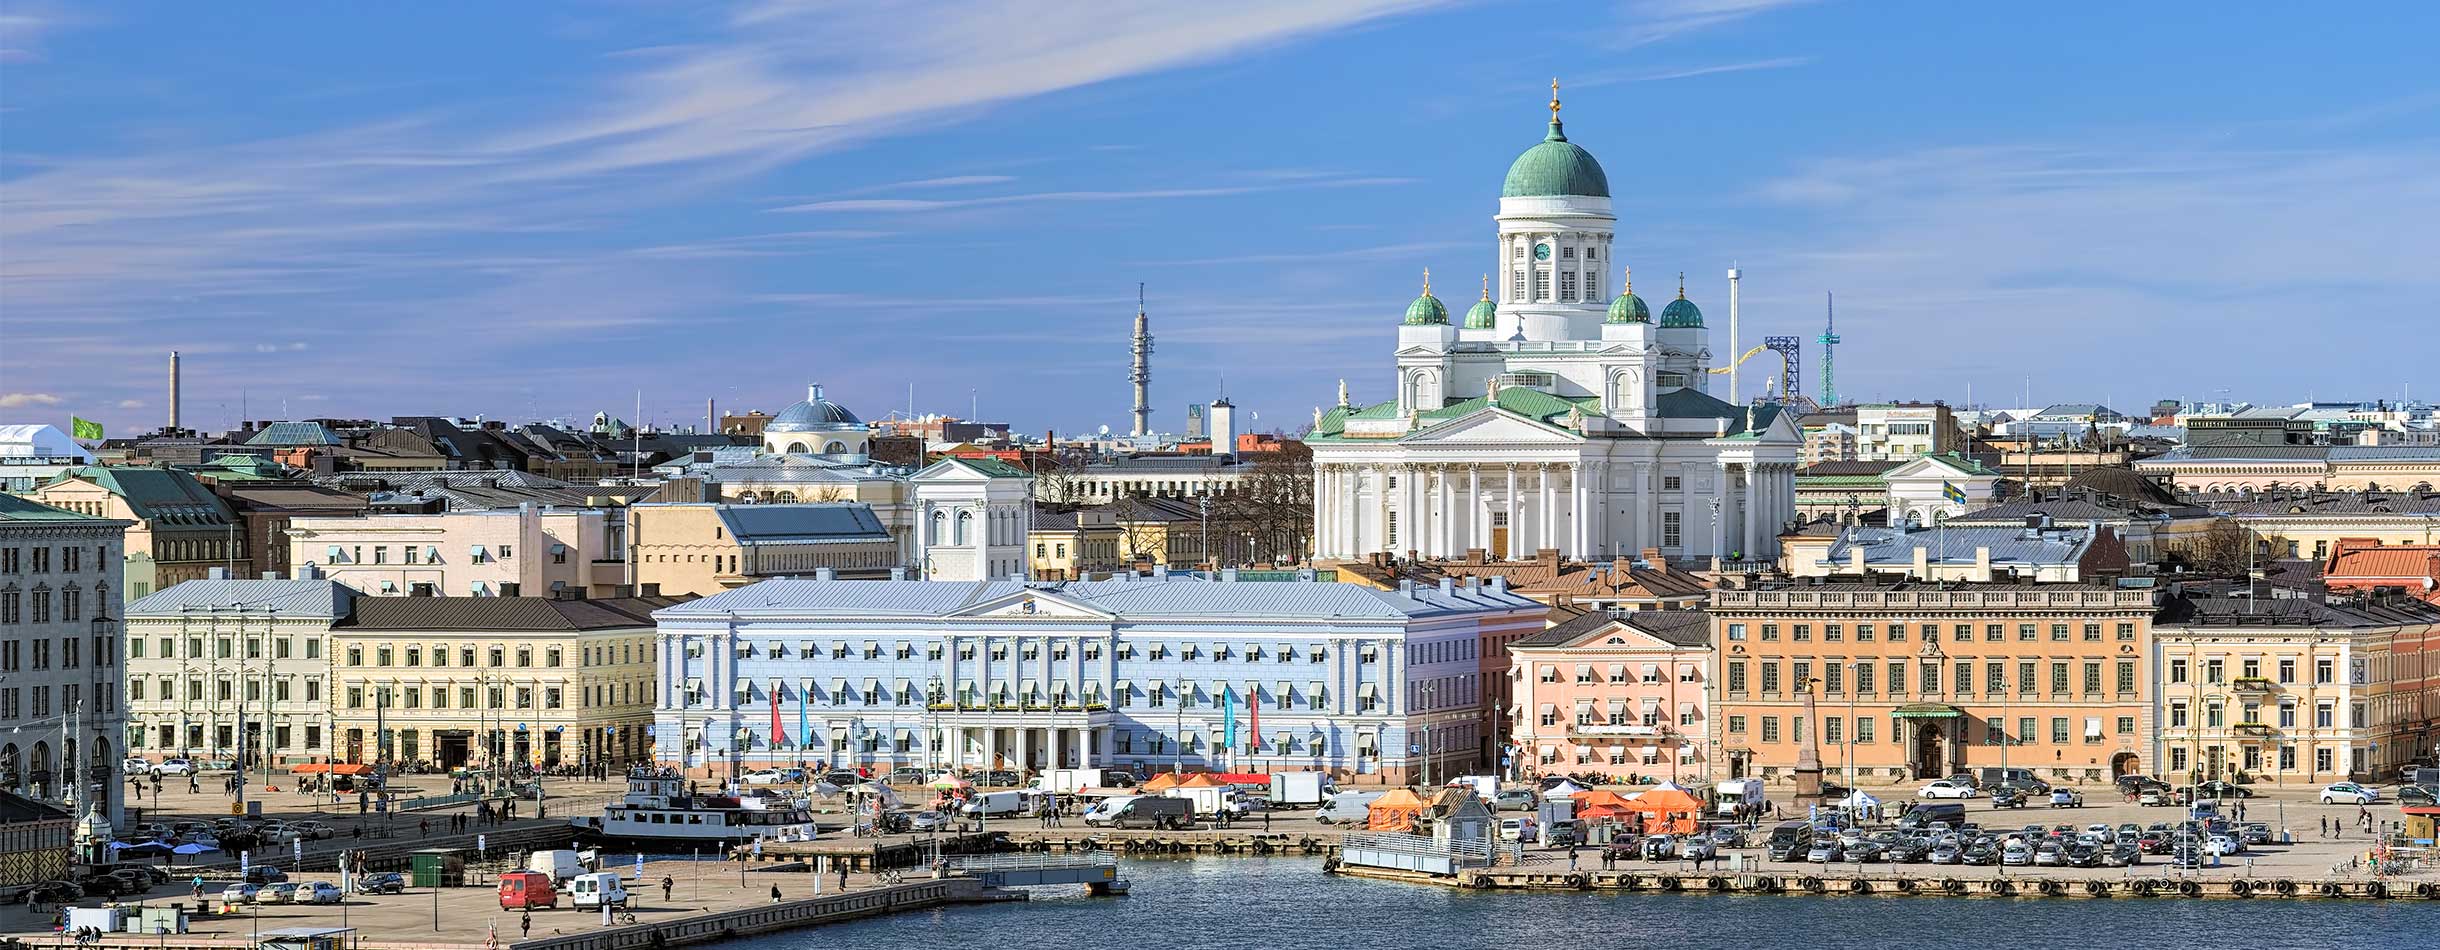 View of Helsinki, Finland